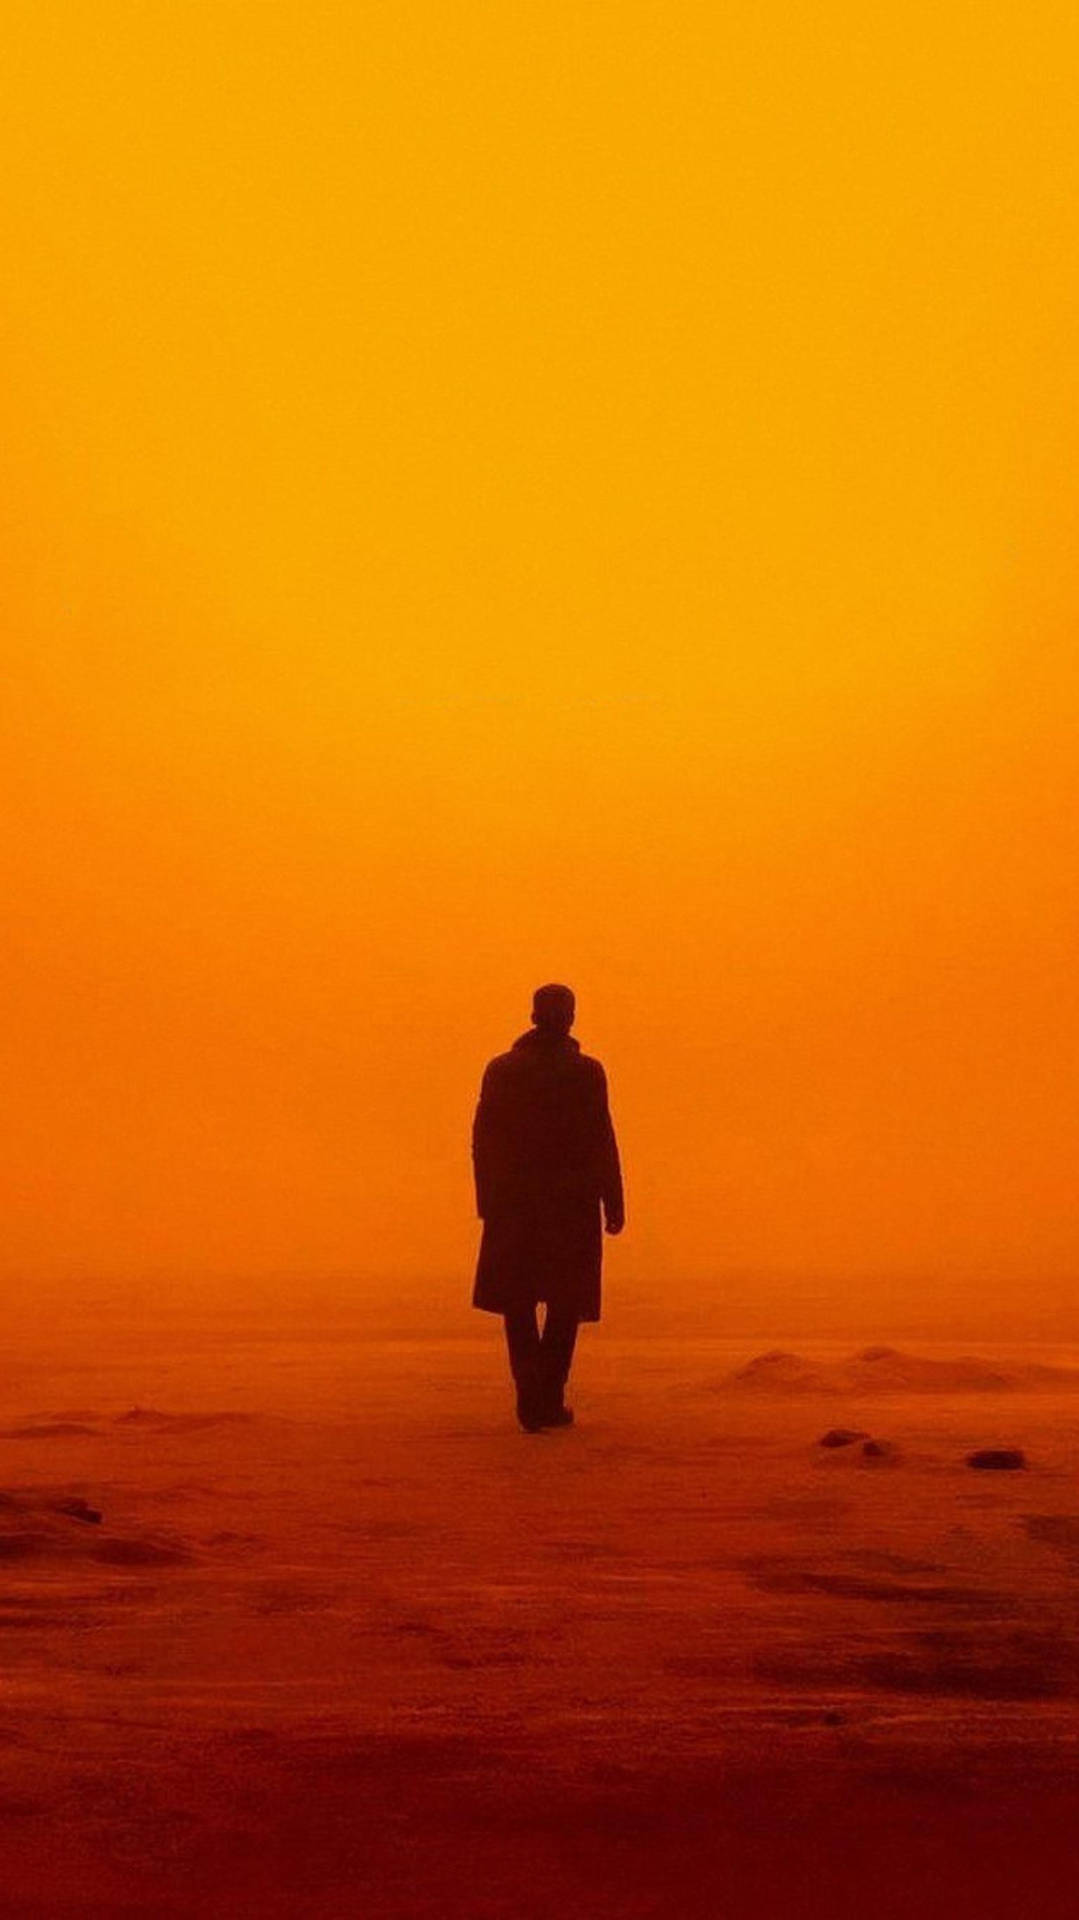 “K in the desolate desert, Blade Runner 2049” Wallpaper